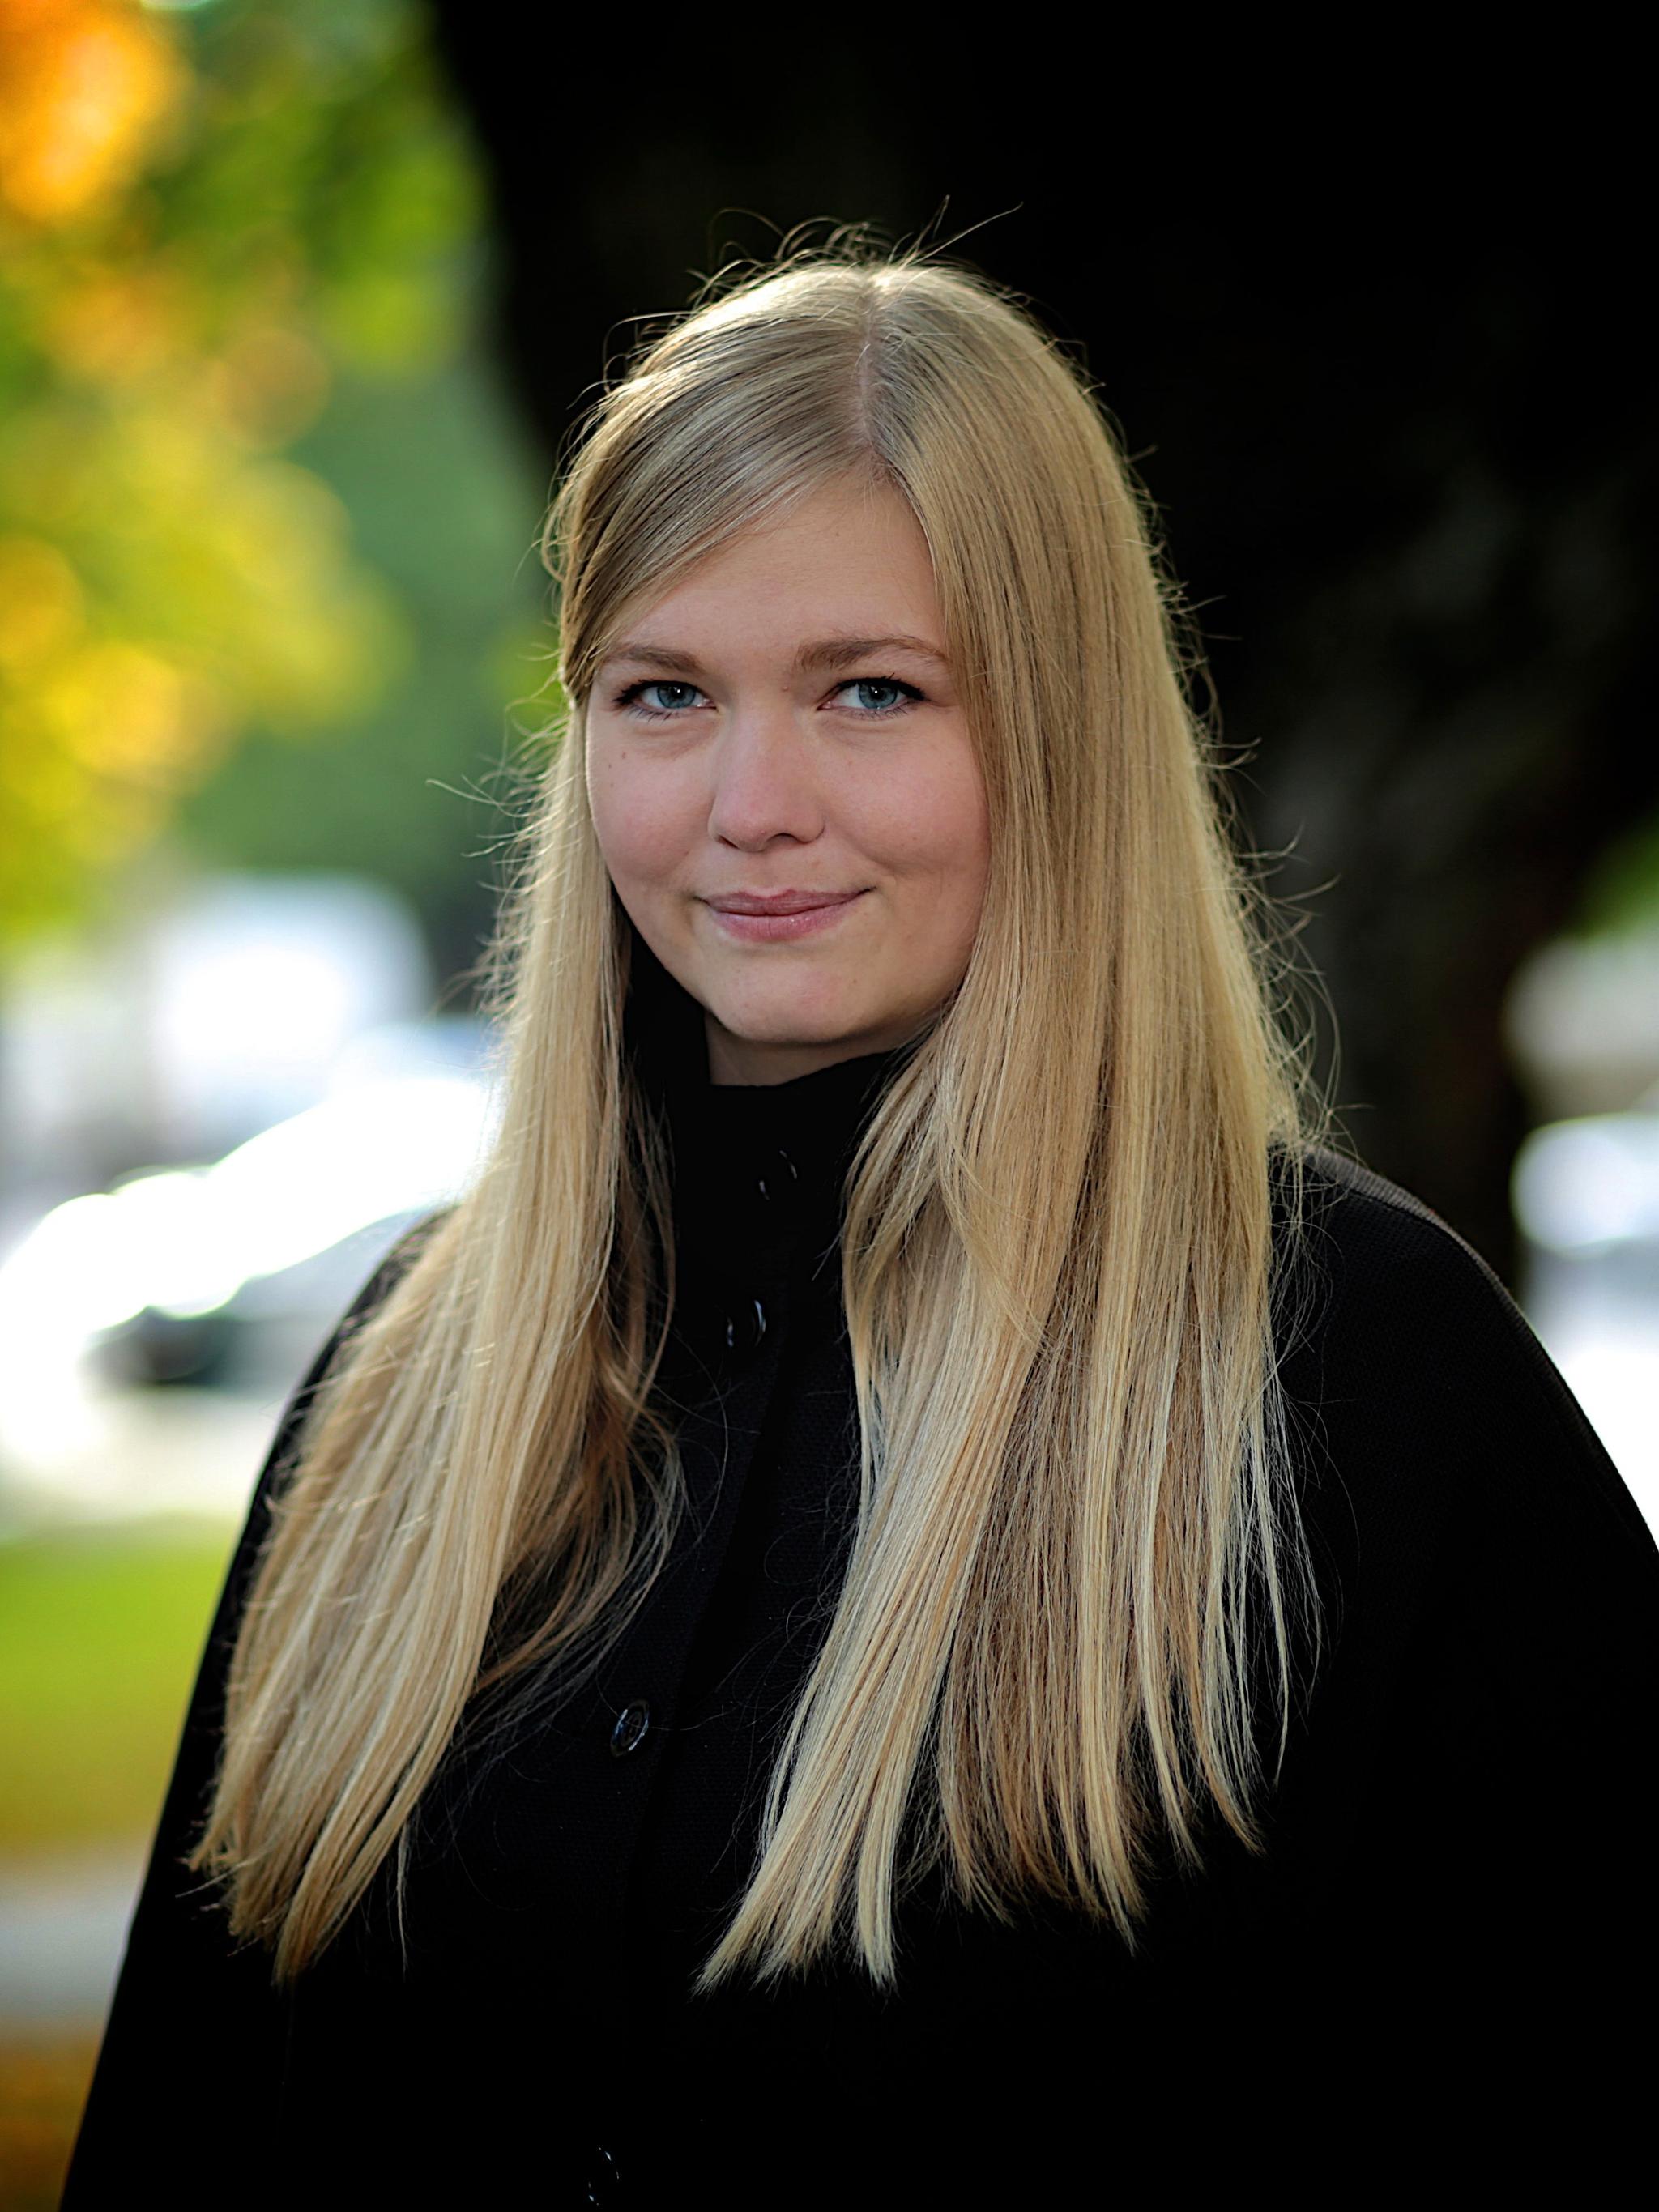  Marit Simonsen er vitenskapsskribent, redaktør i Store norske leksikon og Uviten-spaltist i Aftenposten.